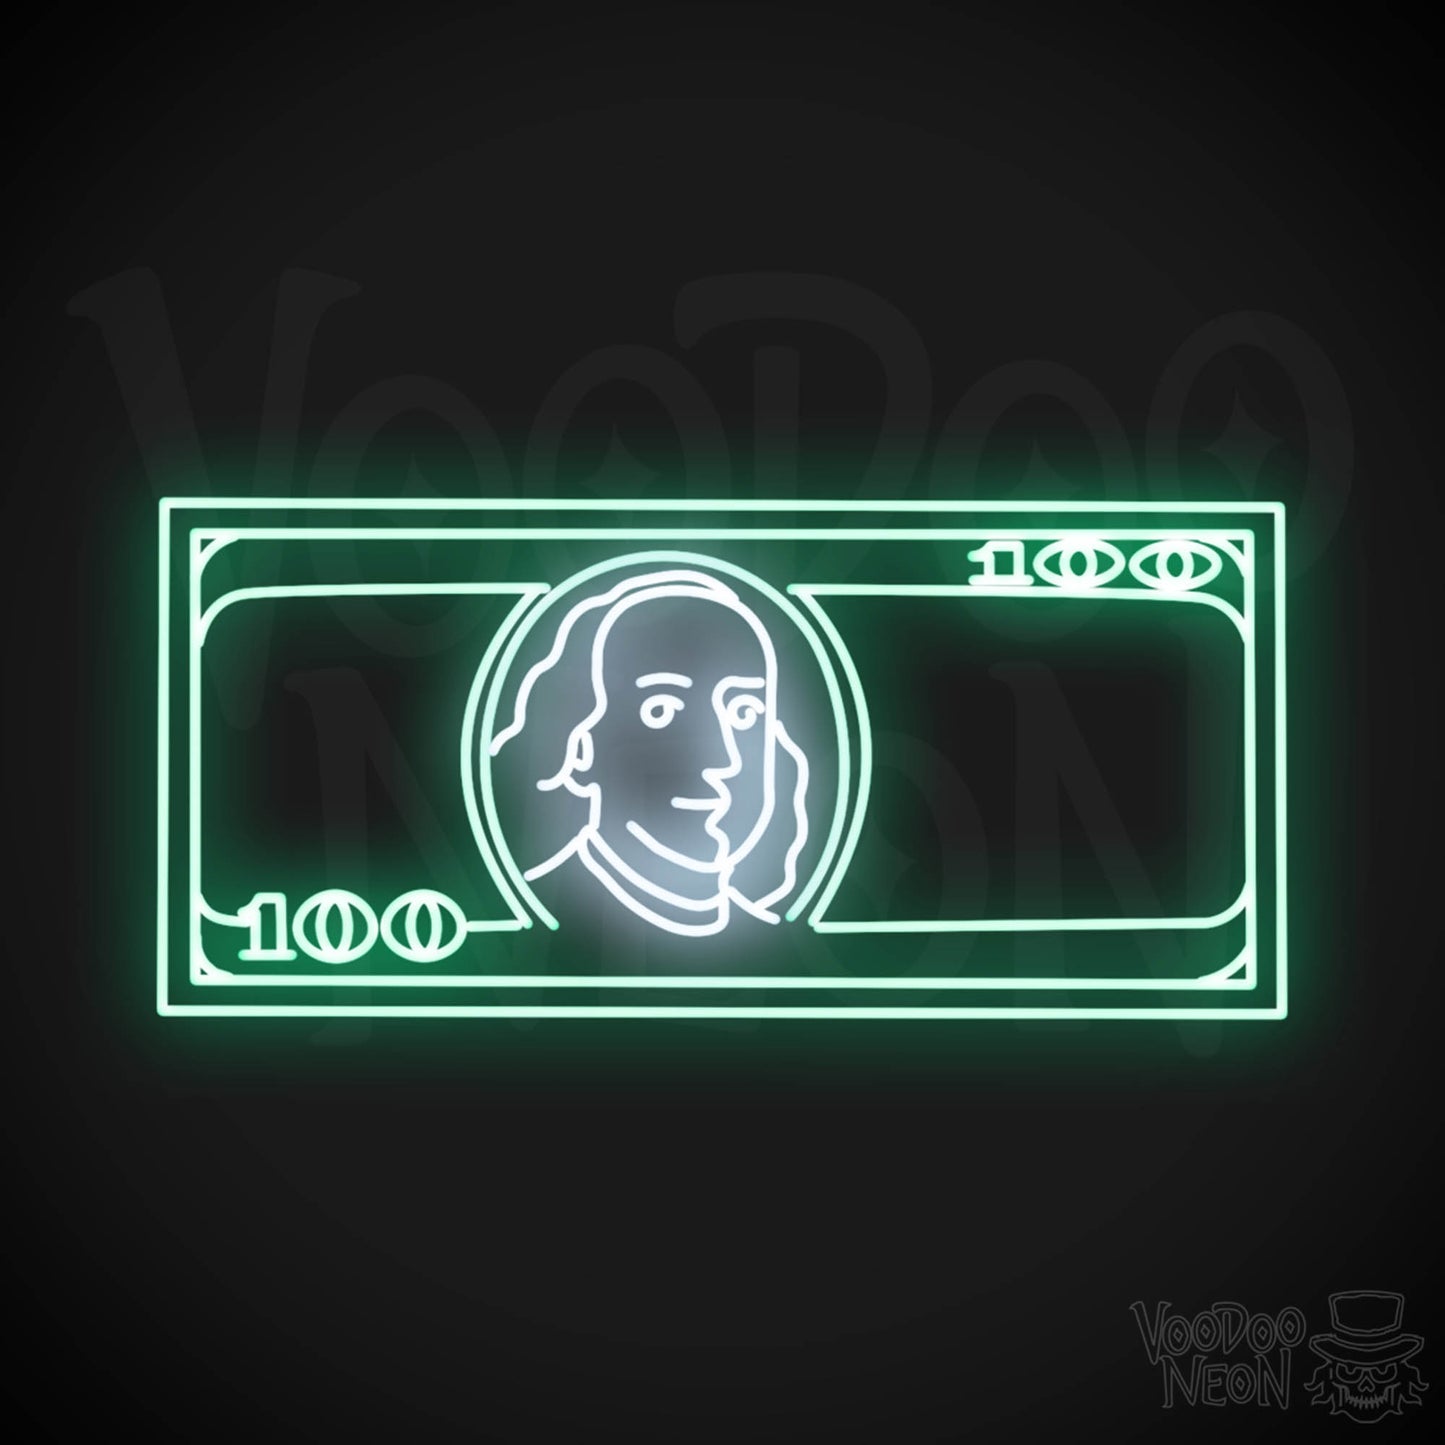 US $100 Bill Neon Sign - Neon $100 Sign - Color Multi-Color